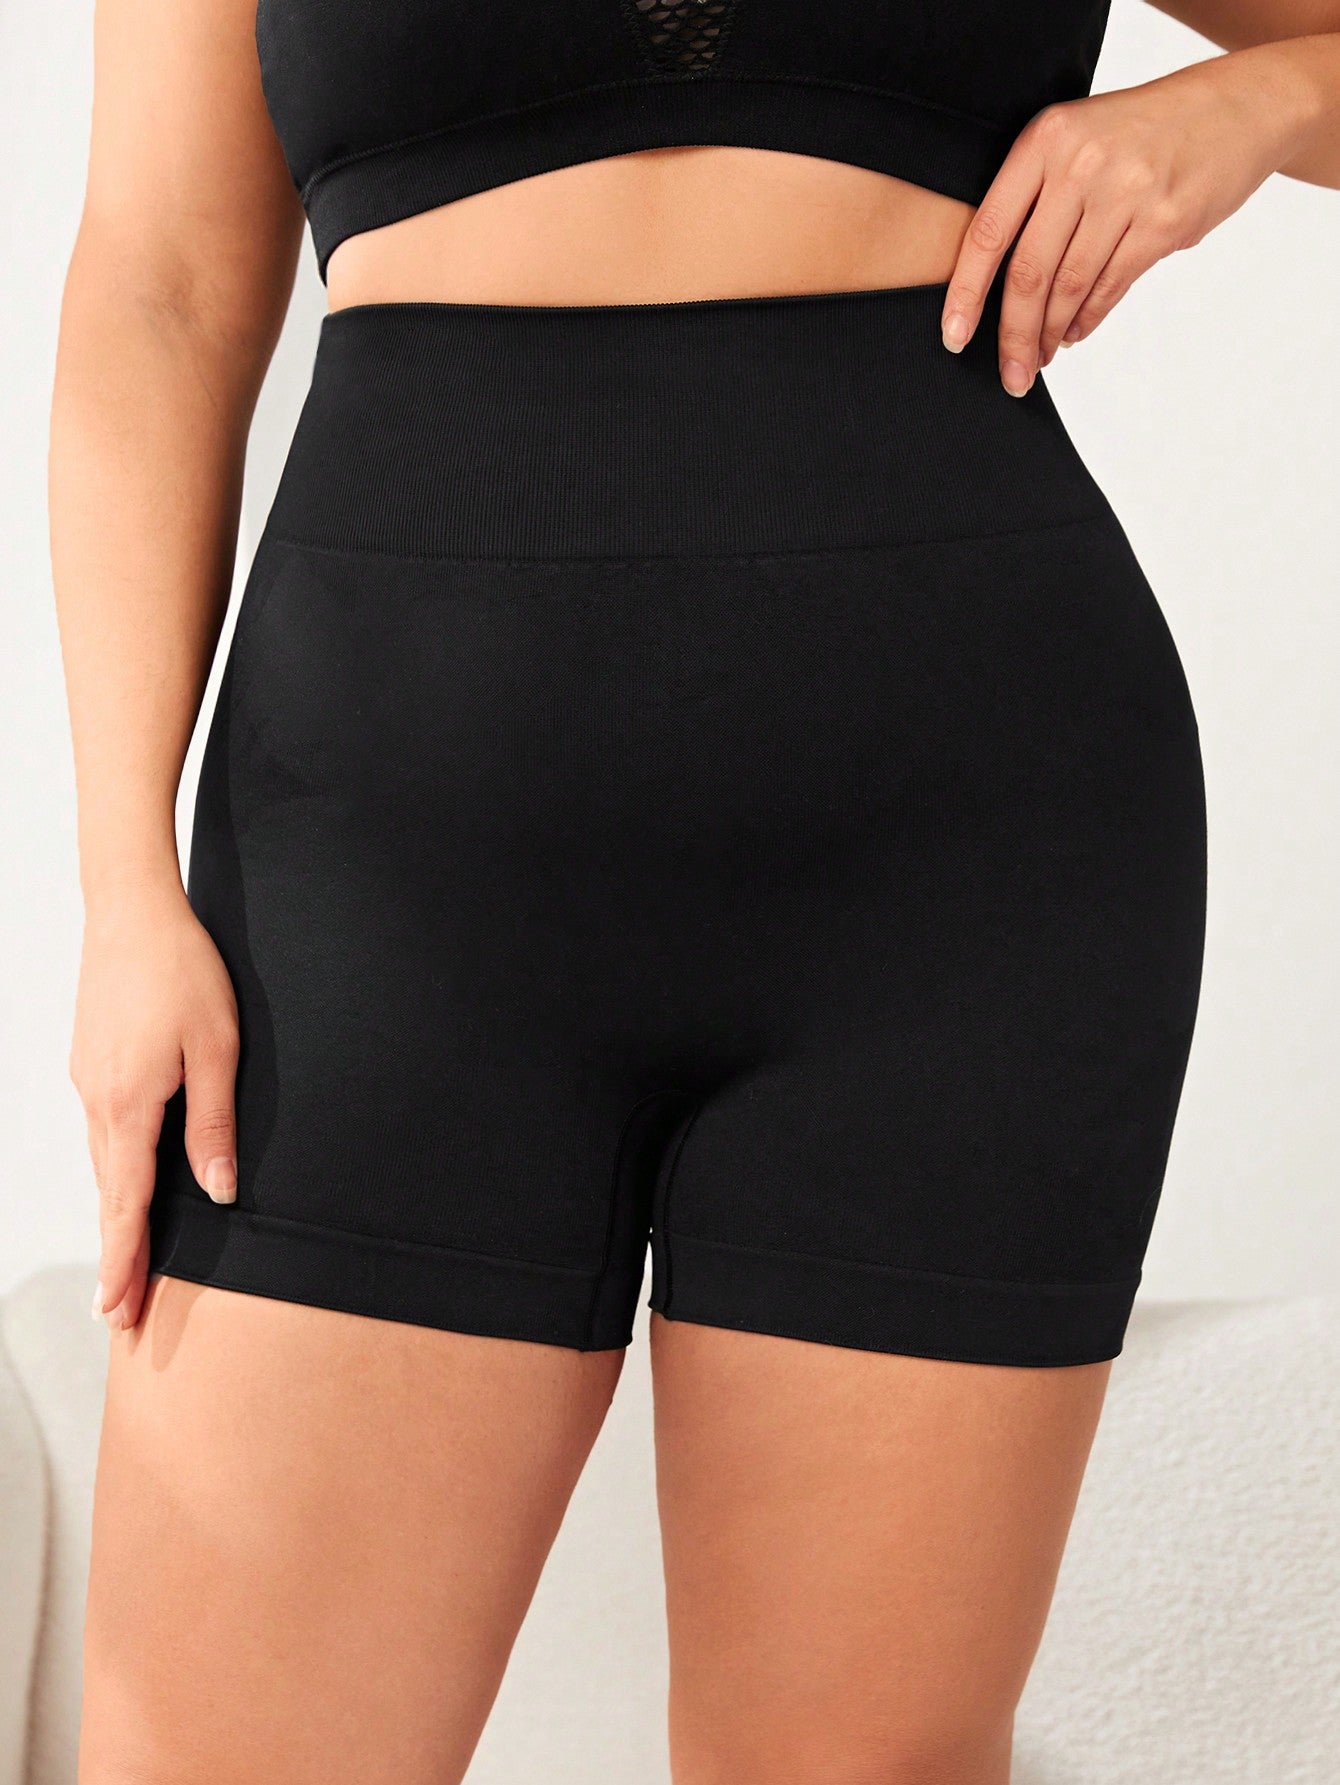 Yoga Plus Size Women's Solid Color Yoga Workout Shorts Black Biker Shorts